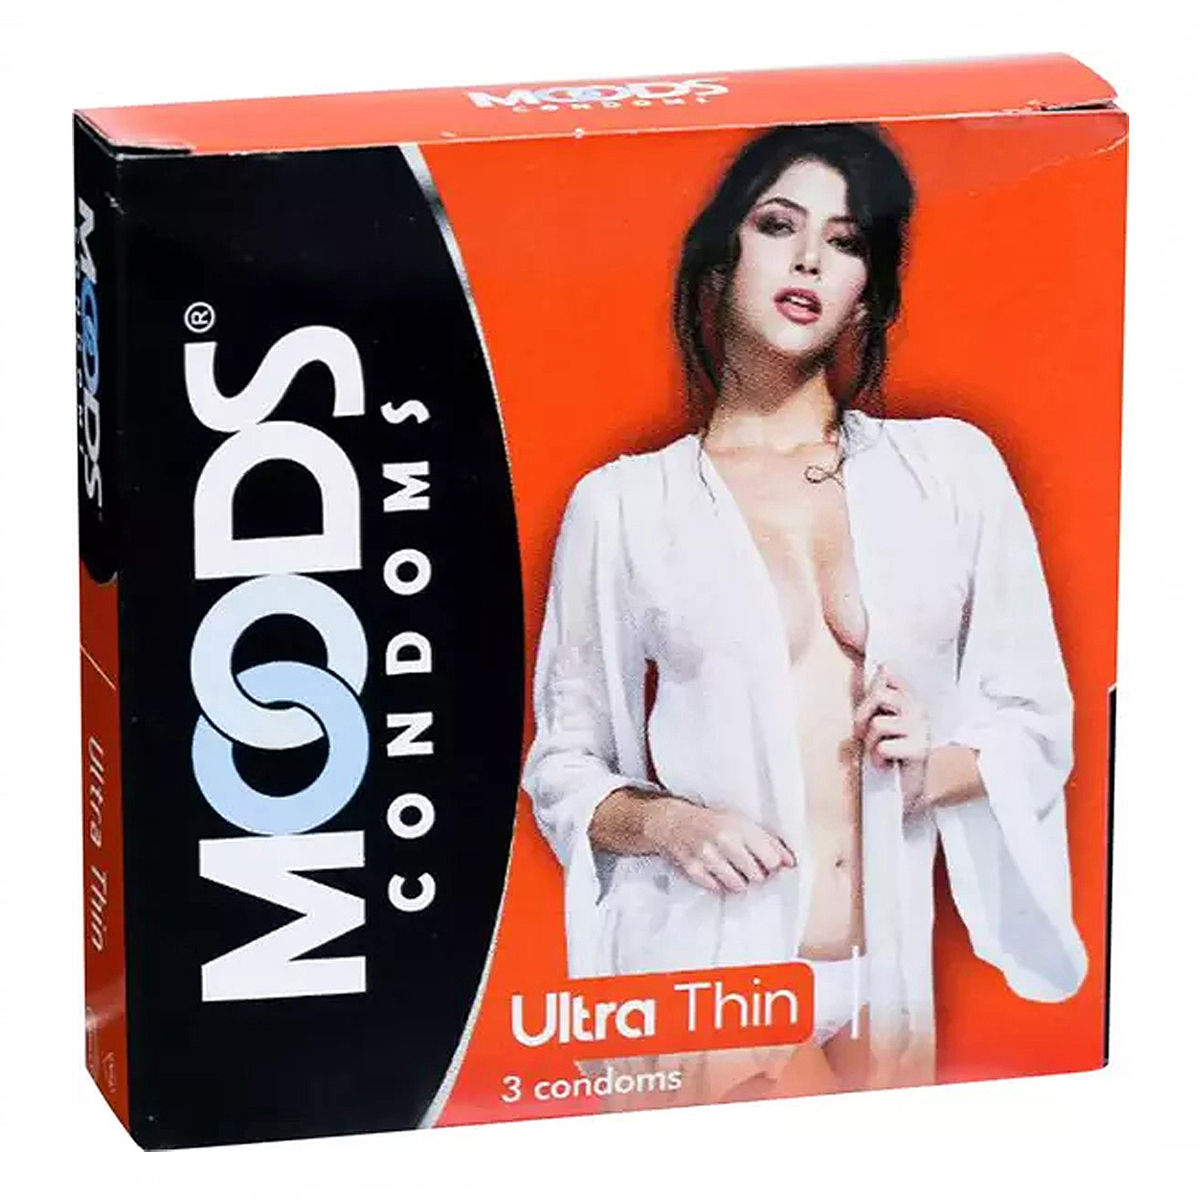 Buy Moods Ultrathin Condoms, 3 Count Online